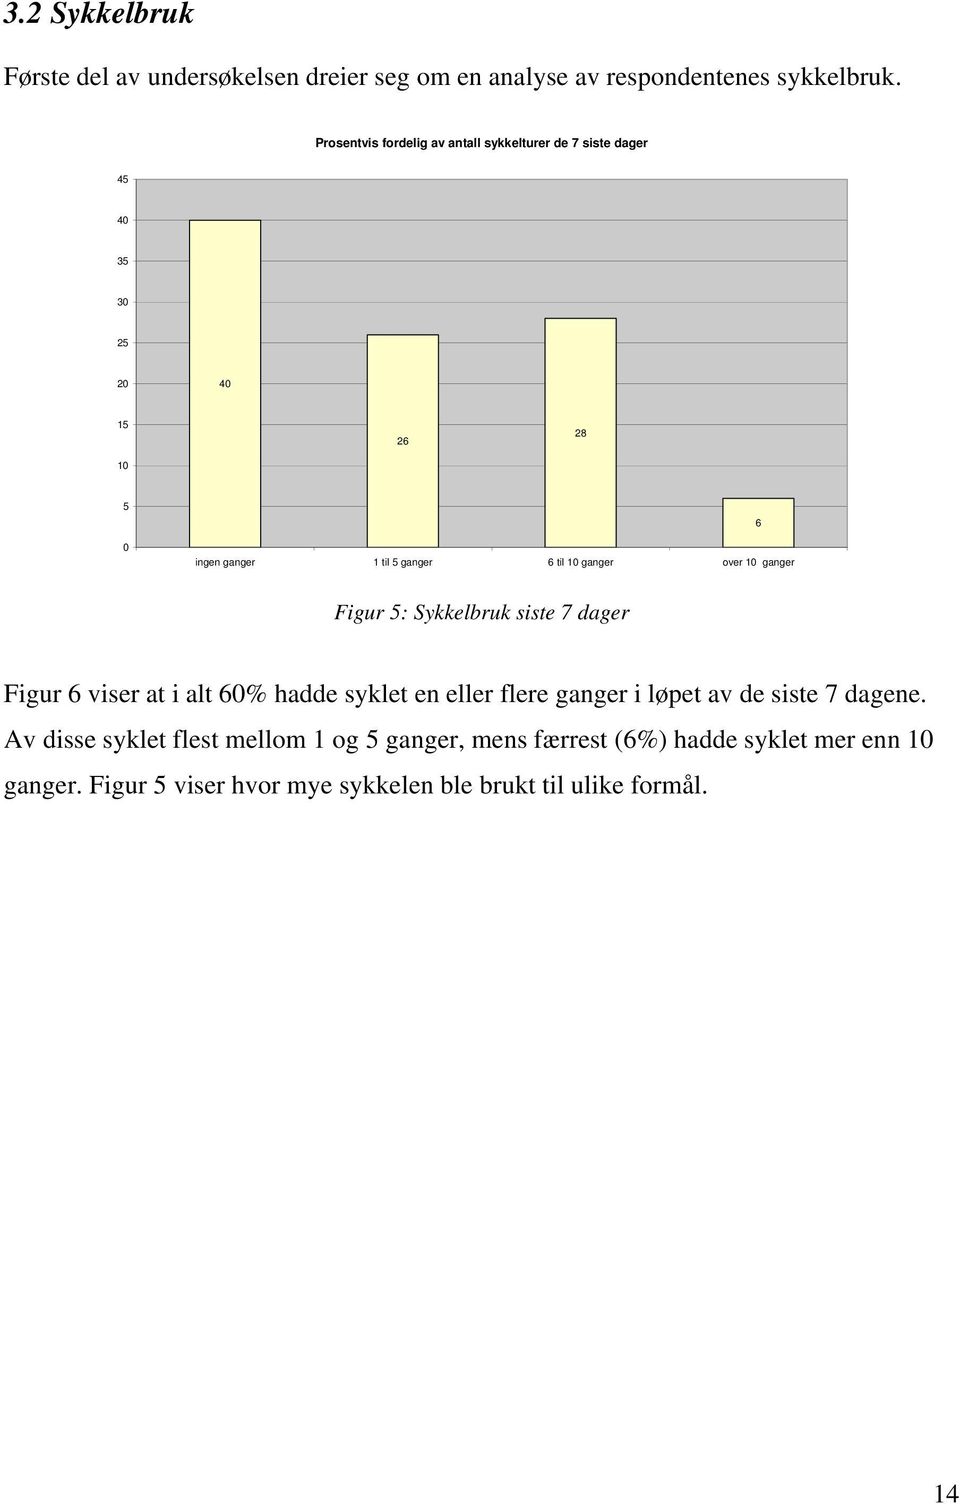 ganger over 10 ganger 6 Figur 5: Sykkelbruk siste 7 dager Figur 6 viser at i alt 60% hadde syklet en eller flere ganger i løpet av de